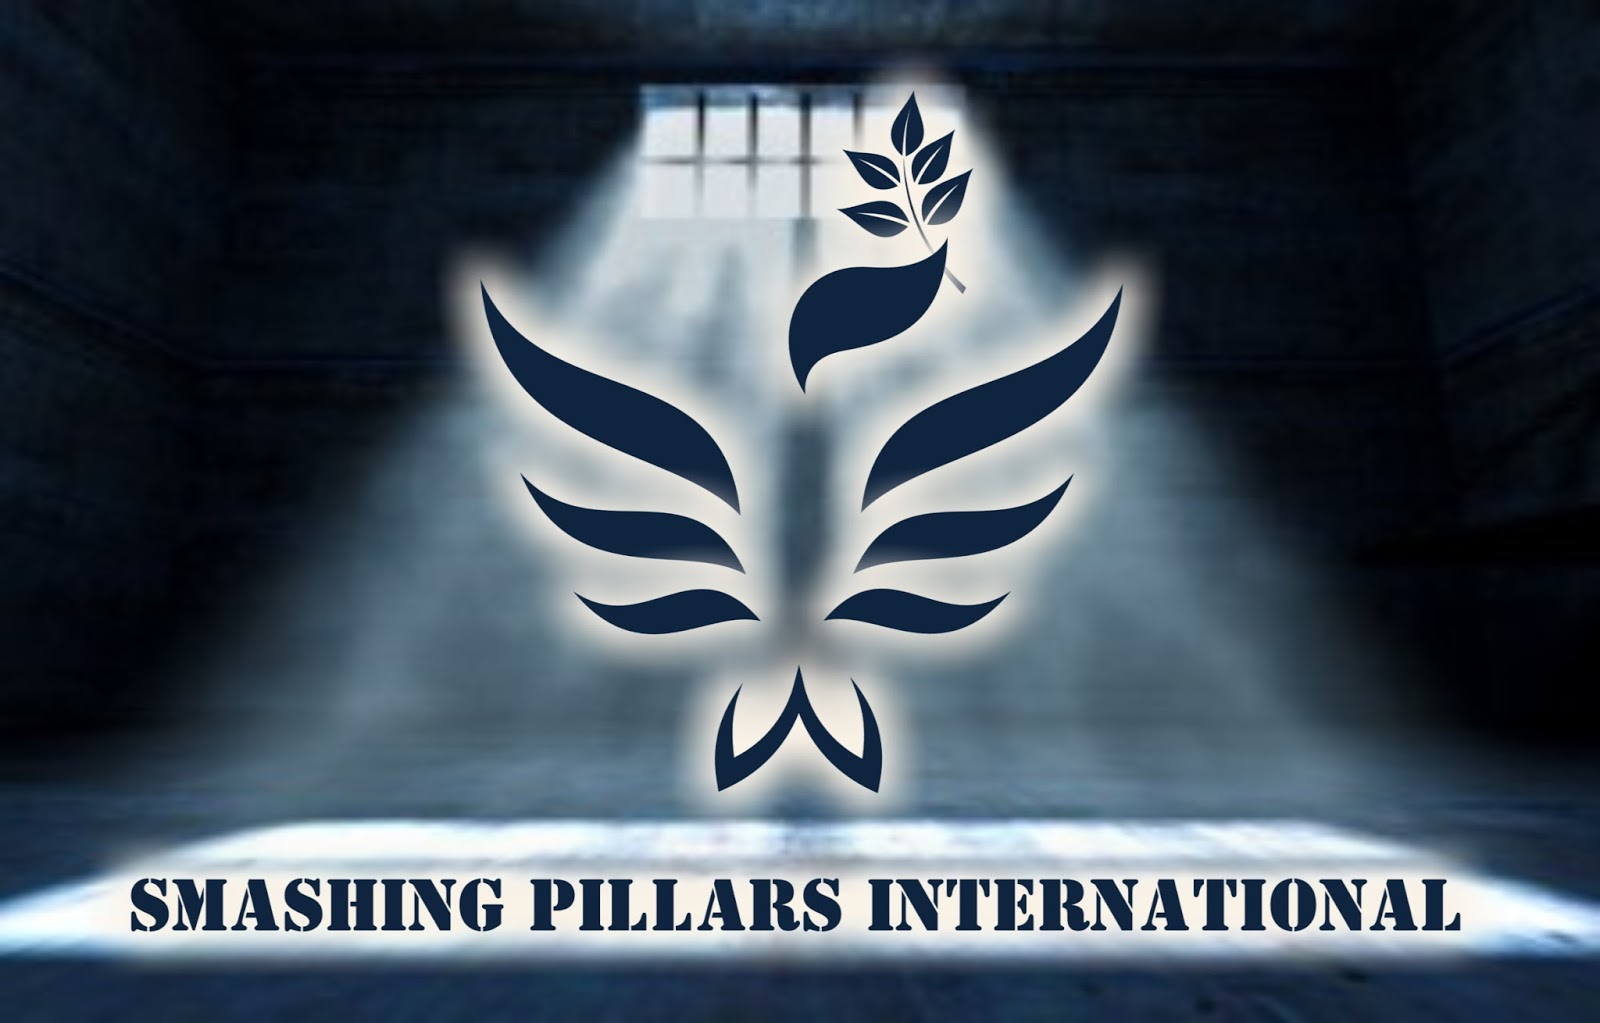 Smashing Pillars International May 2015 - 